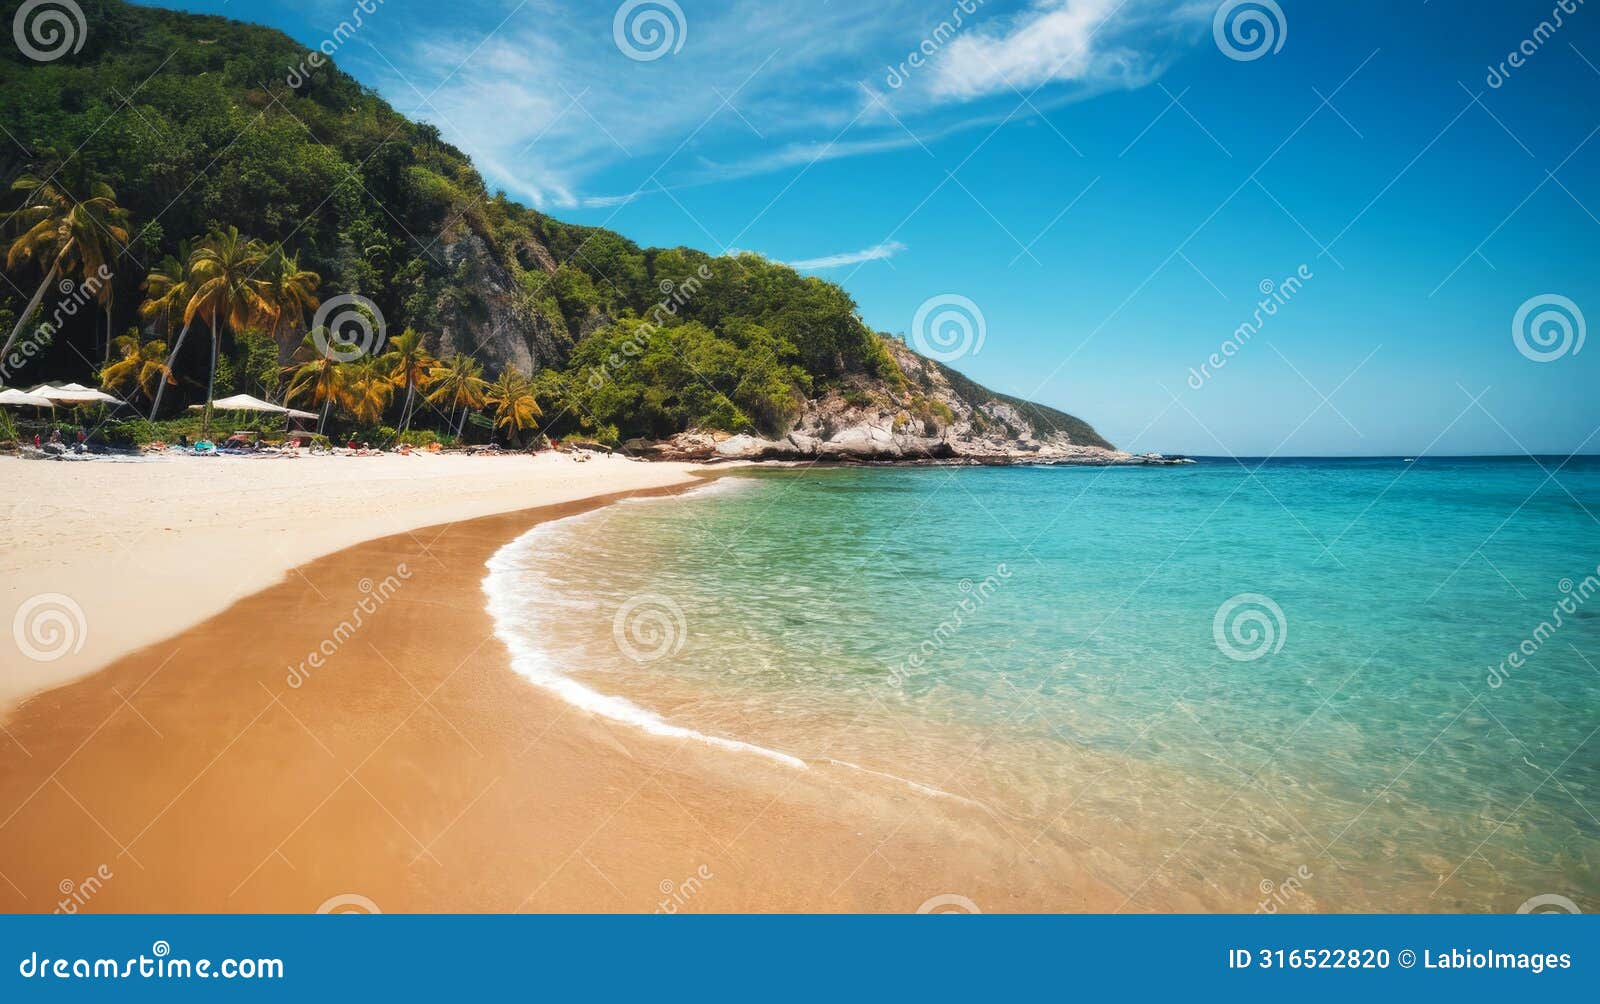 paradisiacal beach on a summer day